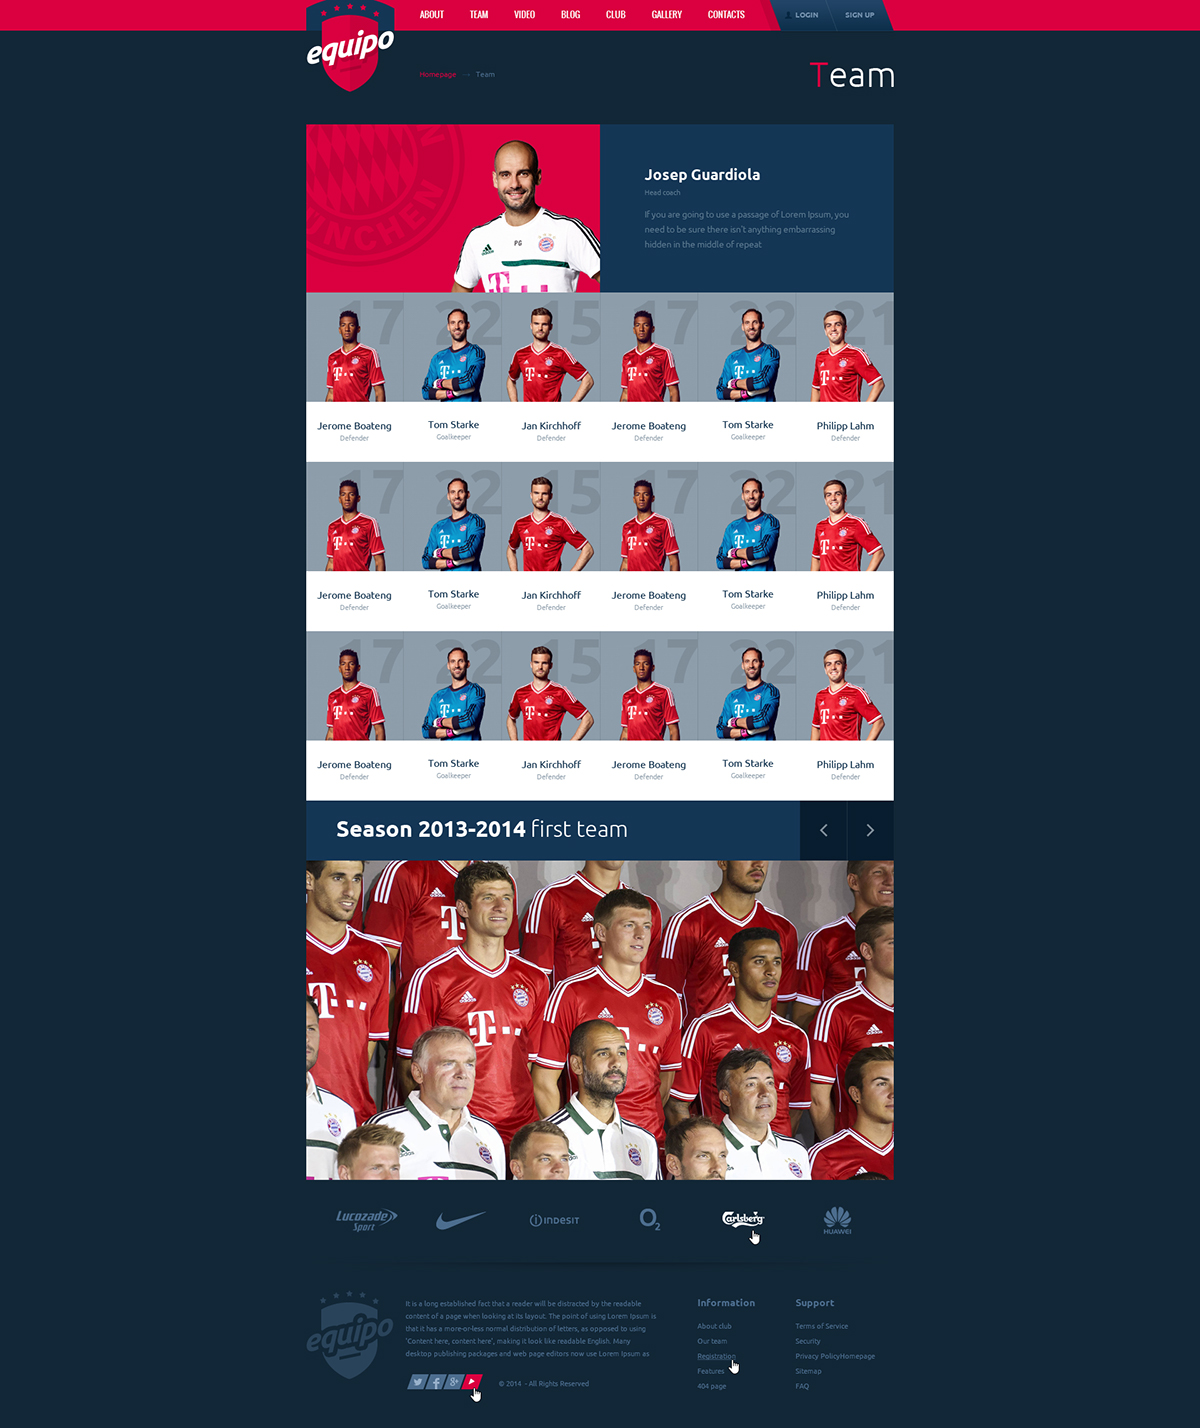 alethemes football Theme wordpress template themefores envato sport theme sport equipo team